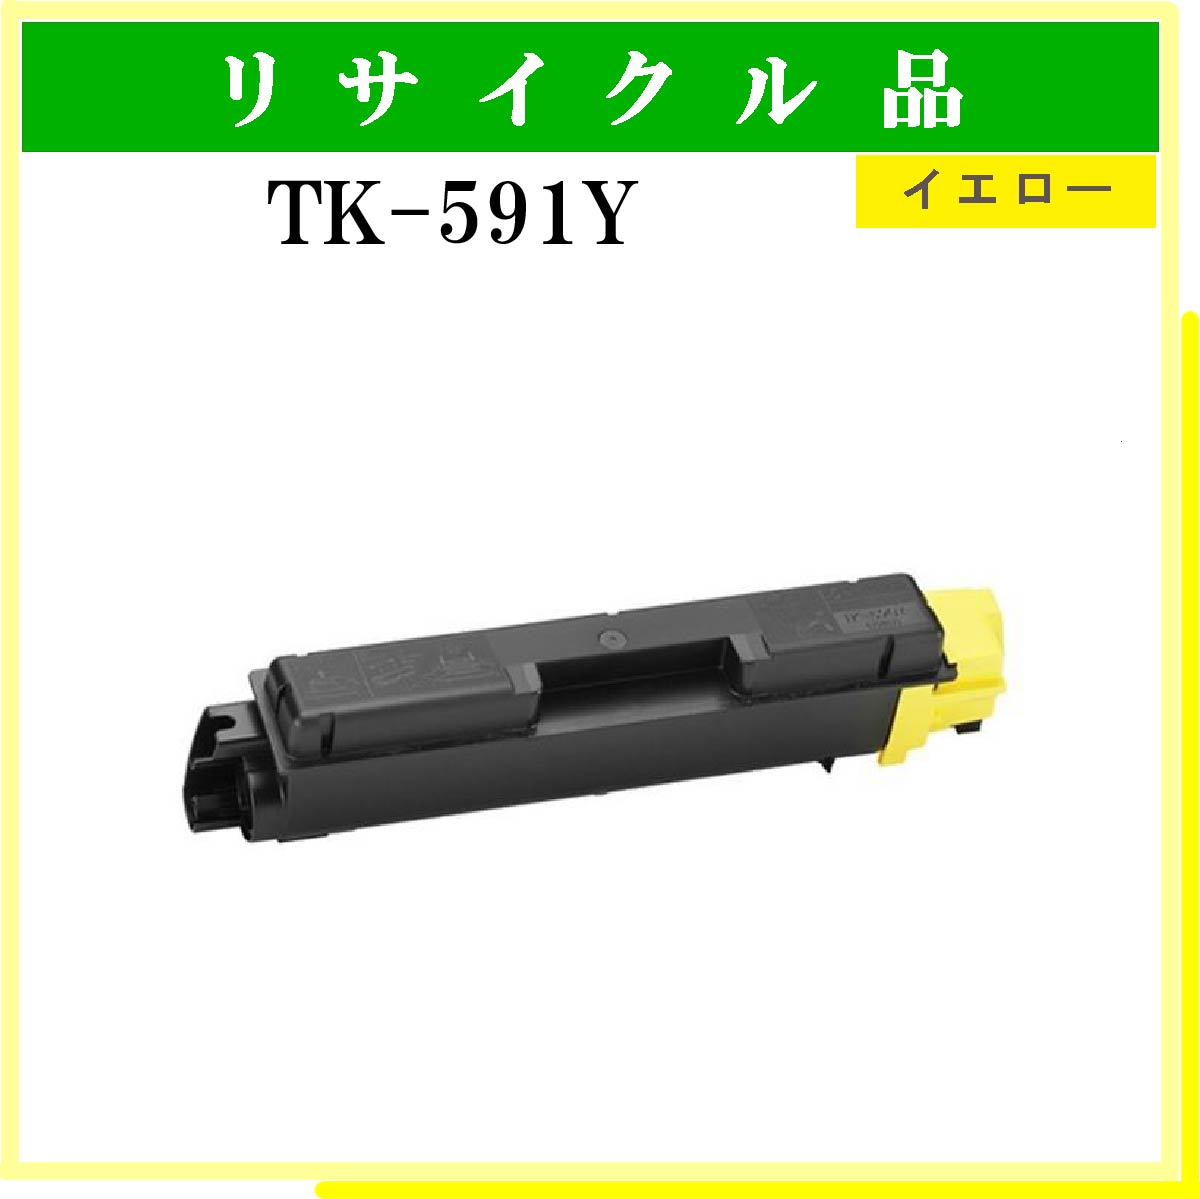 TK-591Y